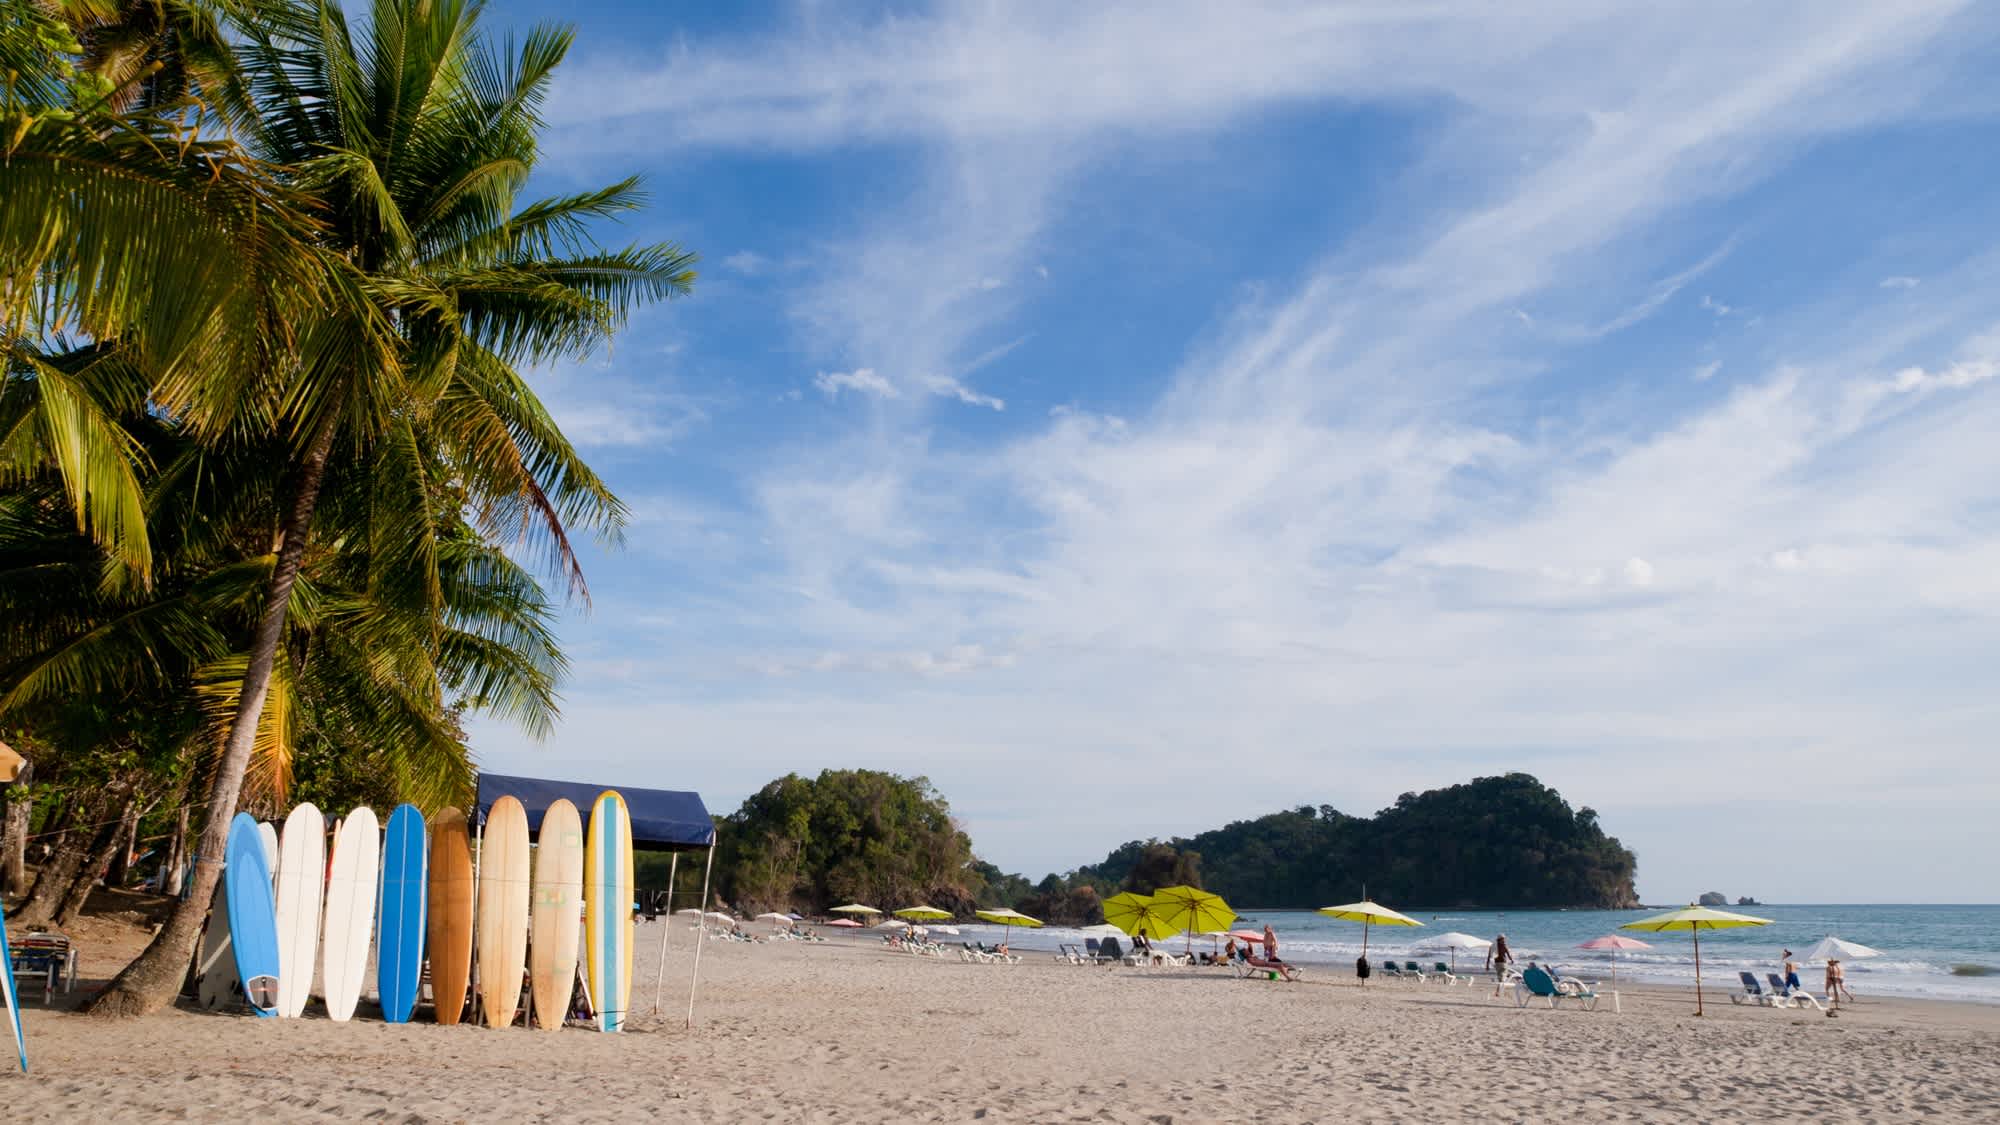 Der Strand von Manuel Antonio in Costa Rica mit Surfbrettern, Palmen und Menschen am Strand bei sonnigem Wetter. 
